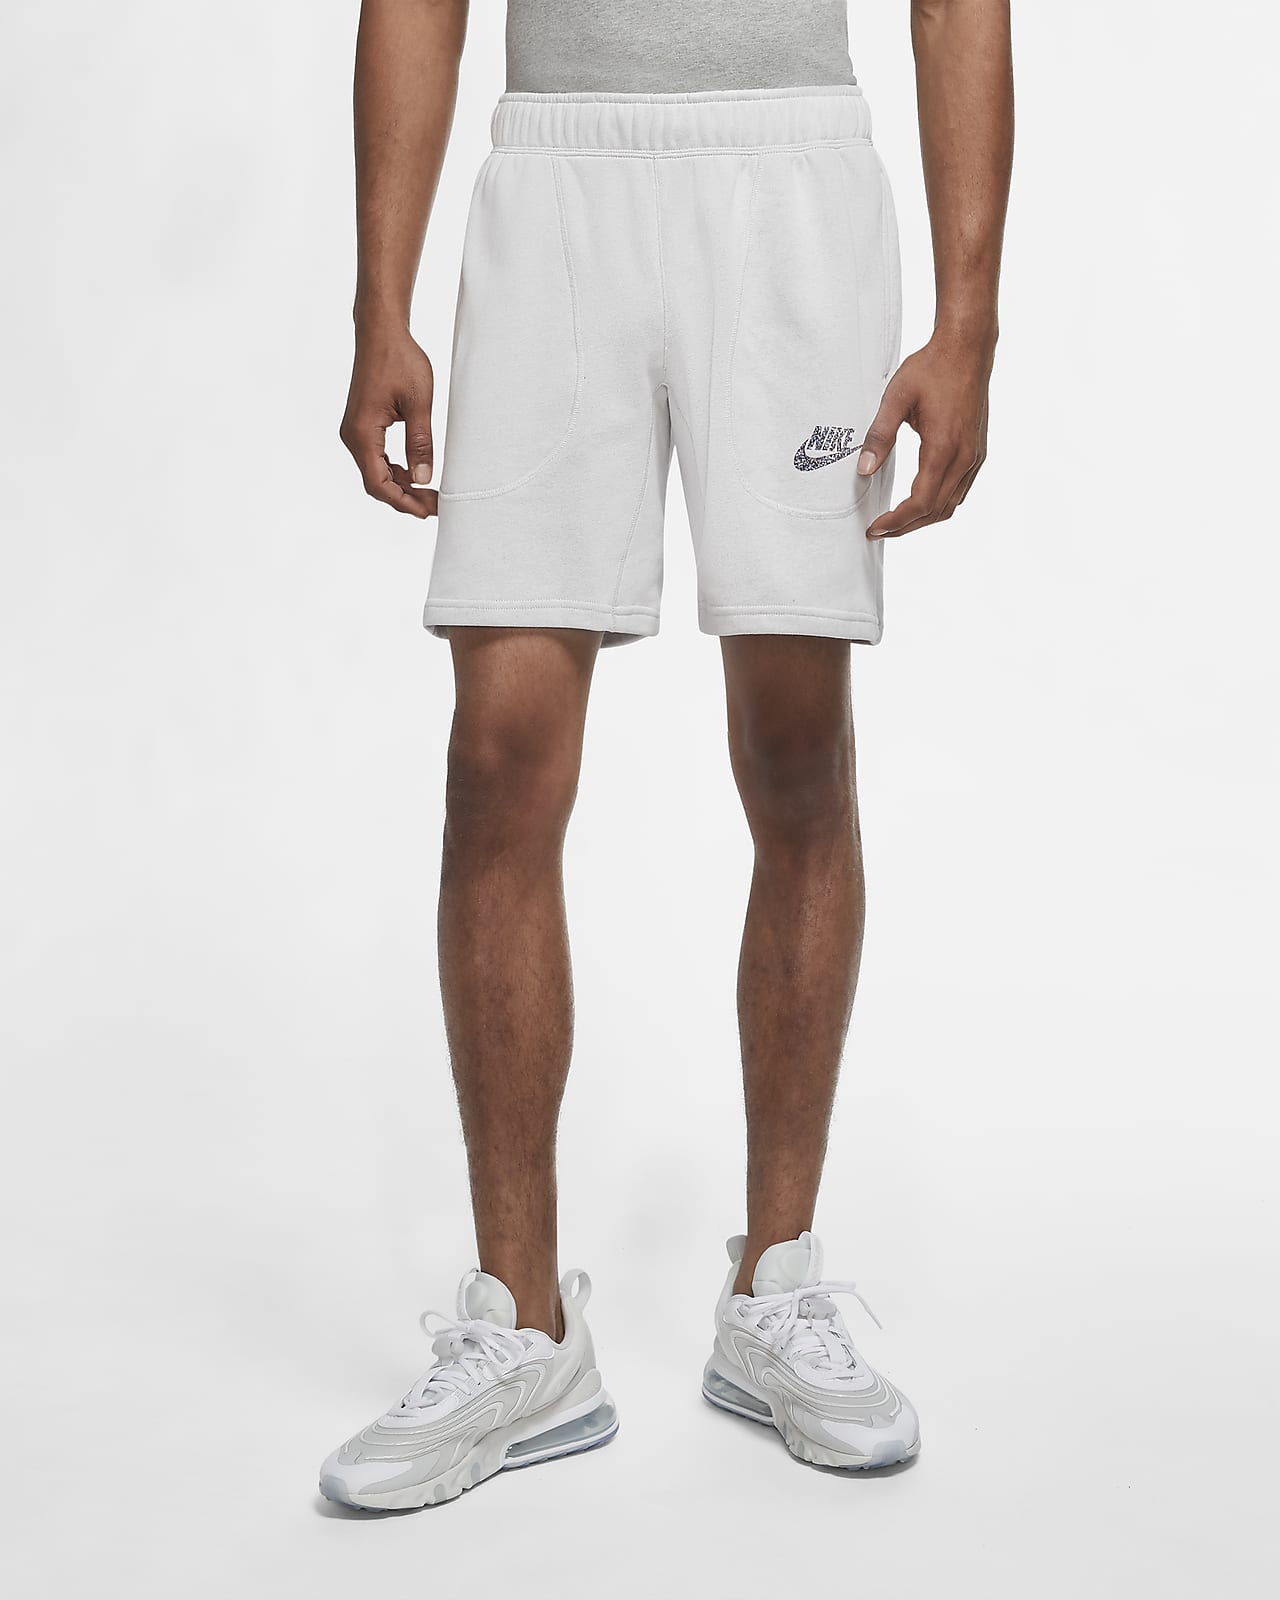 French Terry Shorts. Nike SA